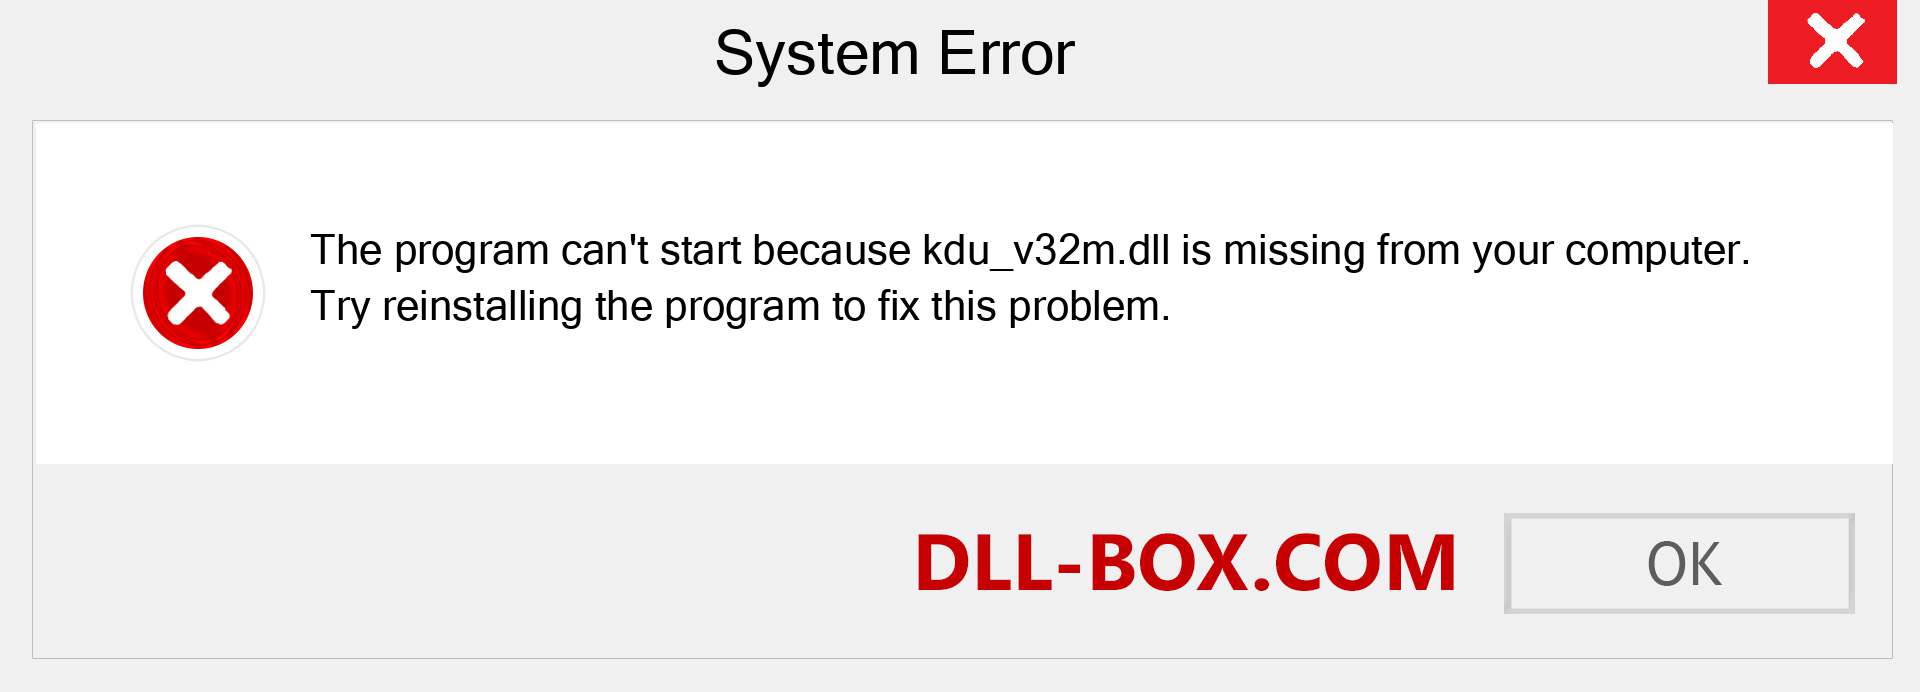  kdu_v32m.dll file is missing?. Download for Windows 7, 8, 10 - Fix  kdu_v32m dll Missing Error on Windows, photos, images